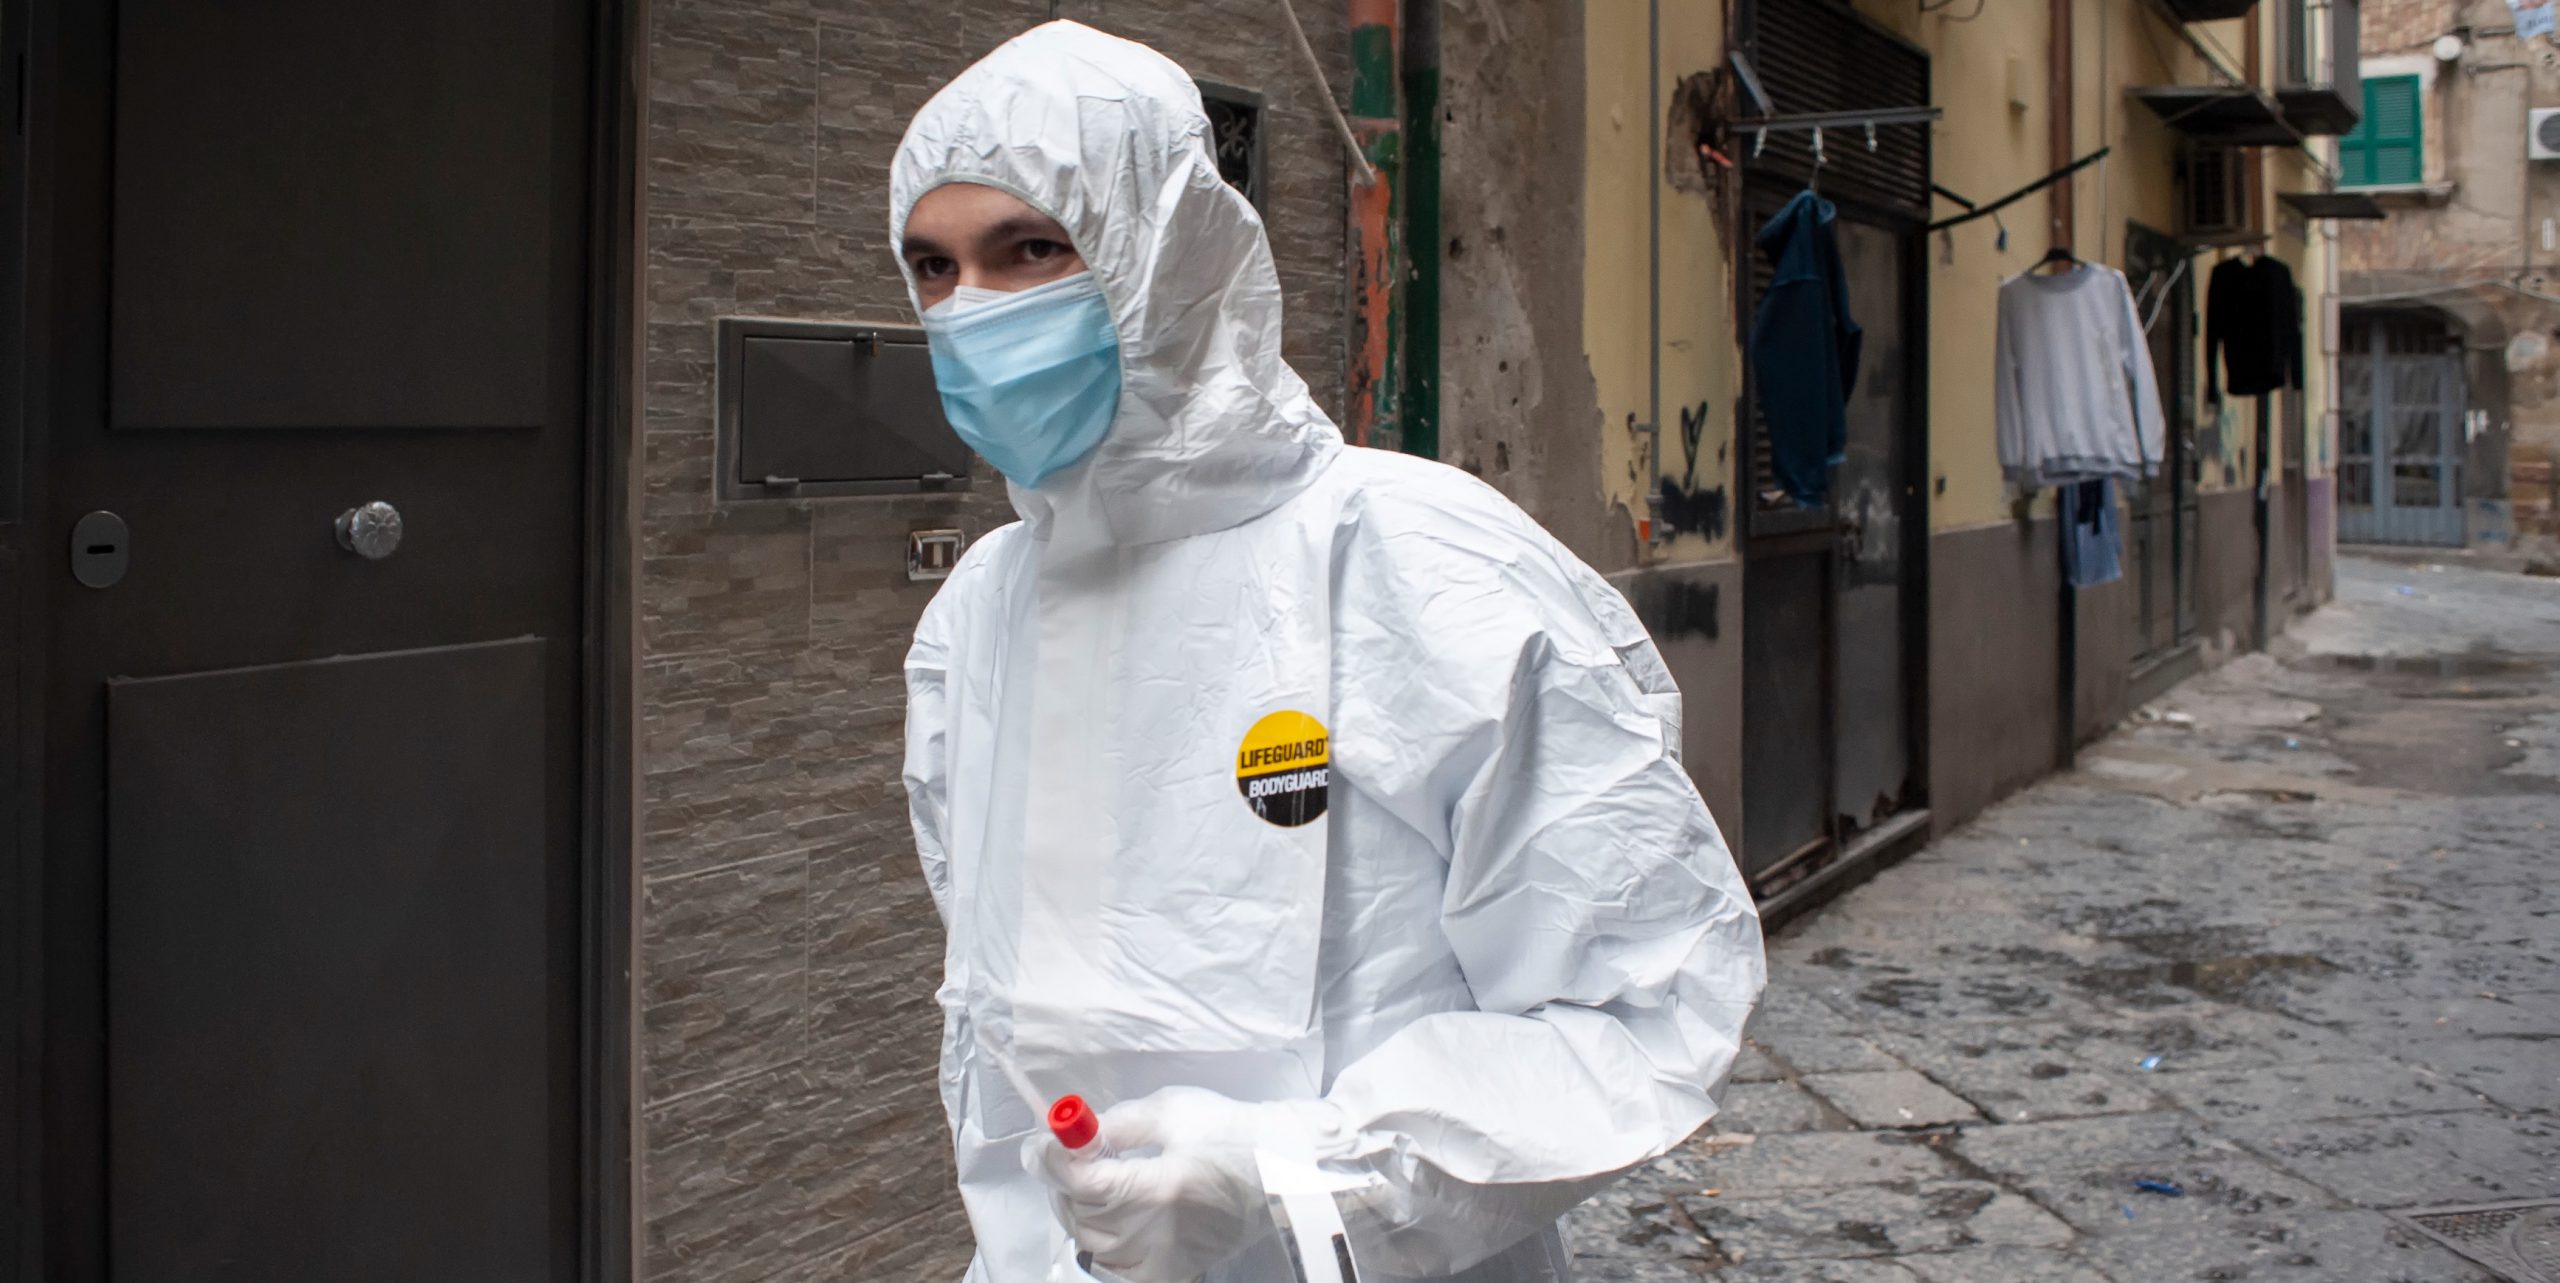 Un operatore sanitario nei Quartieri Spagnoli per effettuare test per il coronavirus a domicilio, Napoli, 17 novembre 2020 (ANSA/Valeria Ferraro/SOPA Images via ZUMA Wire)